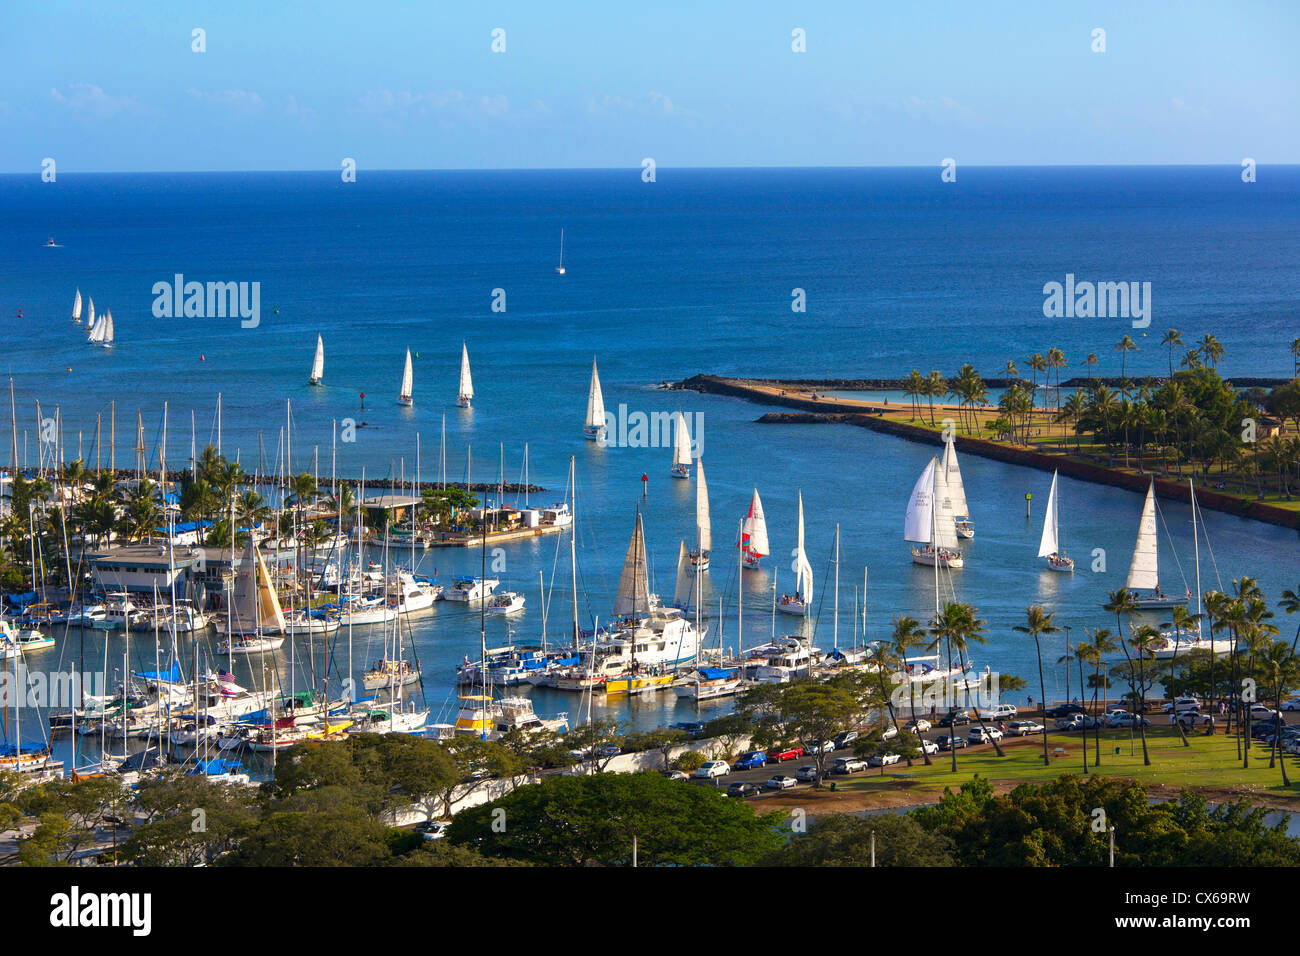 El puerto deportivo Ala Wai, Waikiki, Oahu, Hawai Foto de stock